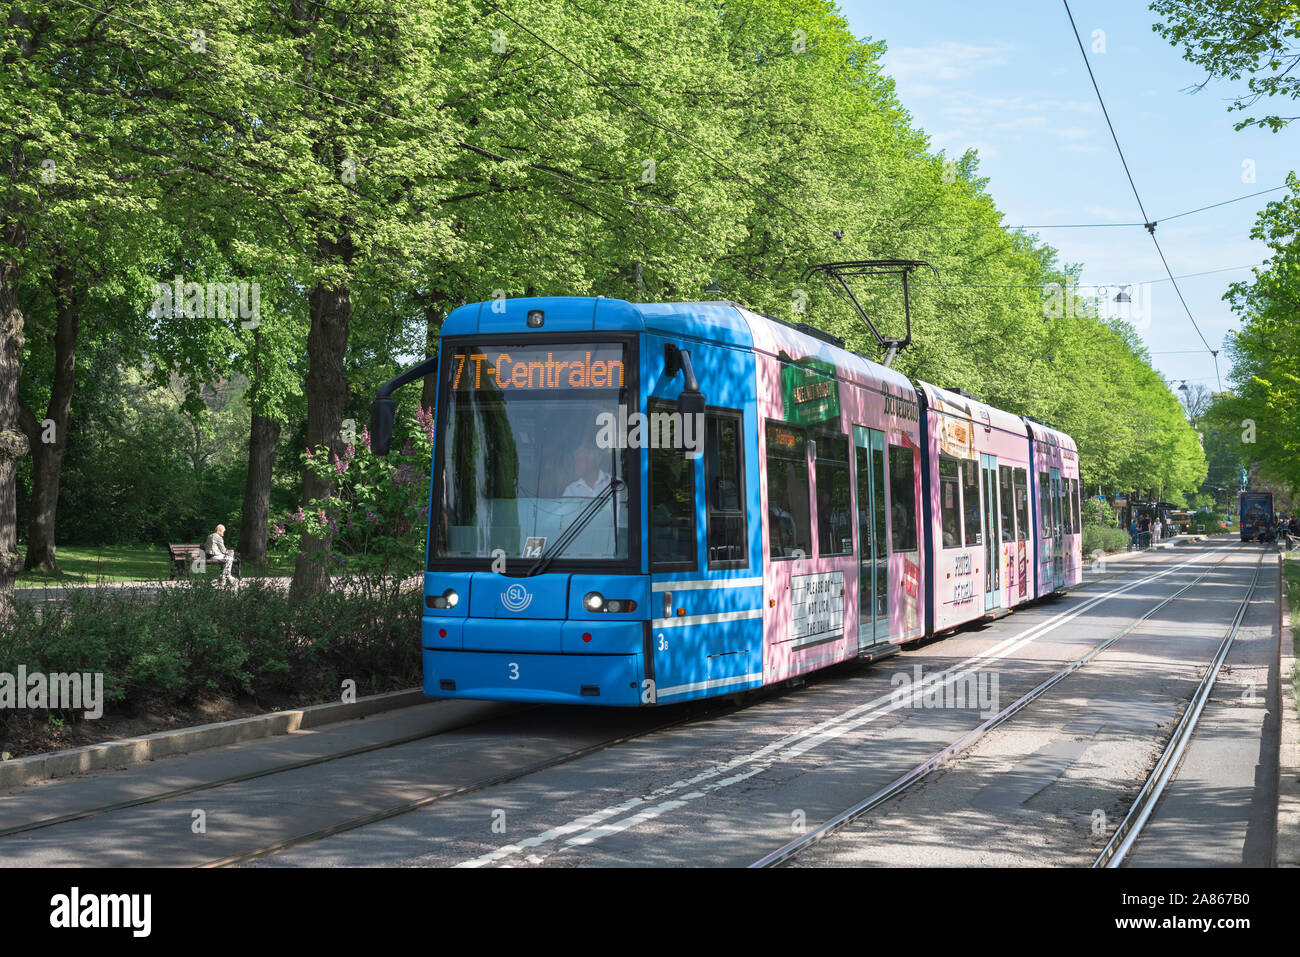 Stoccolma tram, vista in estate il numero 7 il tram che trasporta i visitatori a Djurgarden e il museo all'aperto di Skansen, Stoccolma, Svezia. Foto Stock